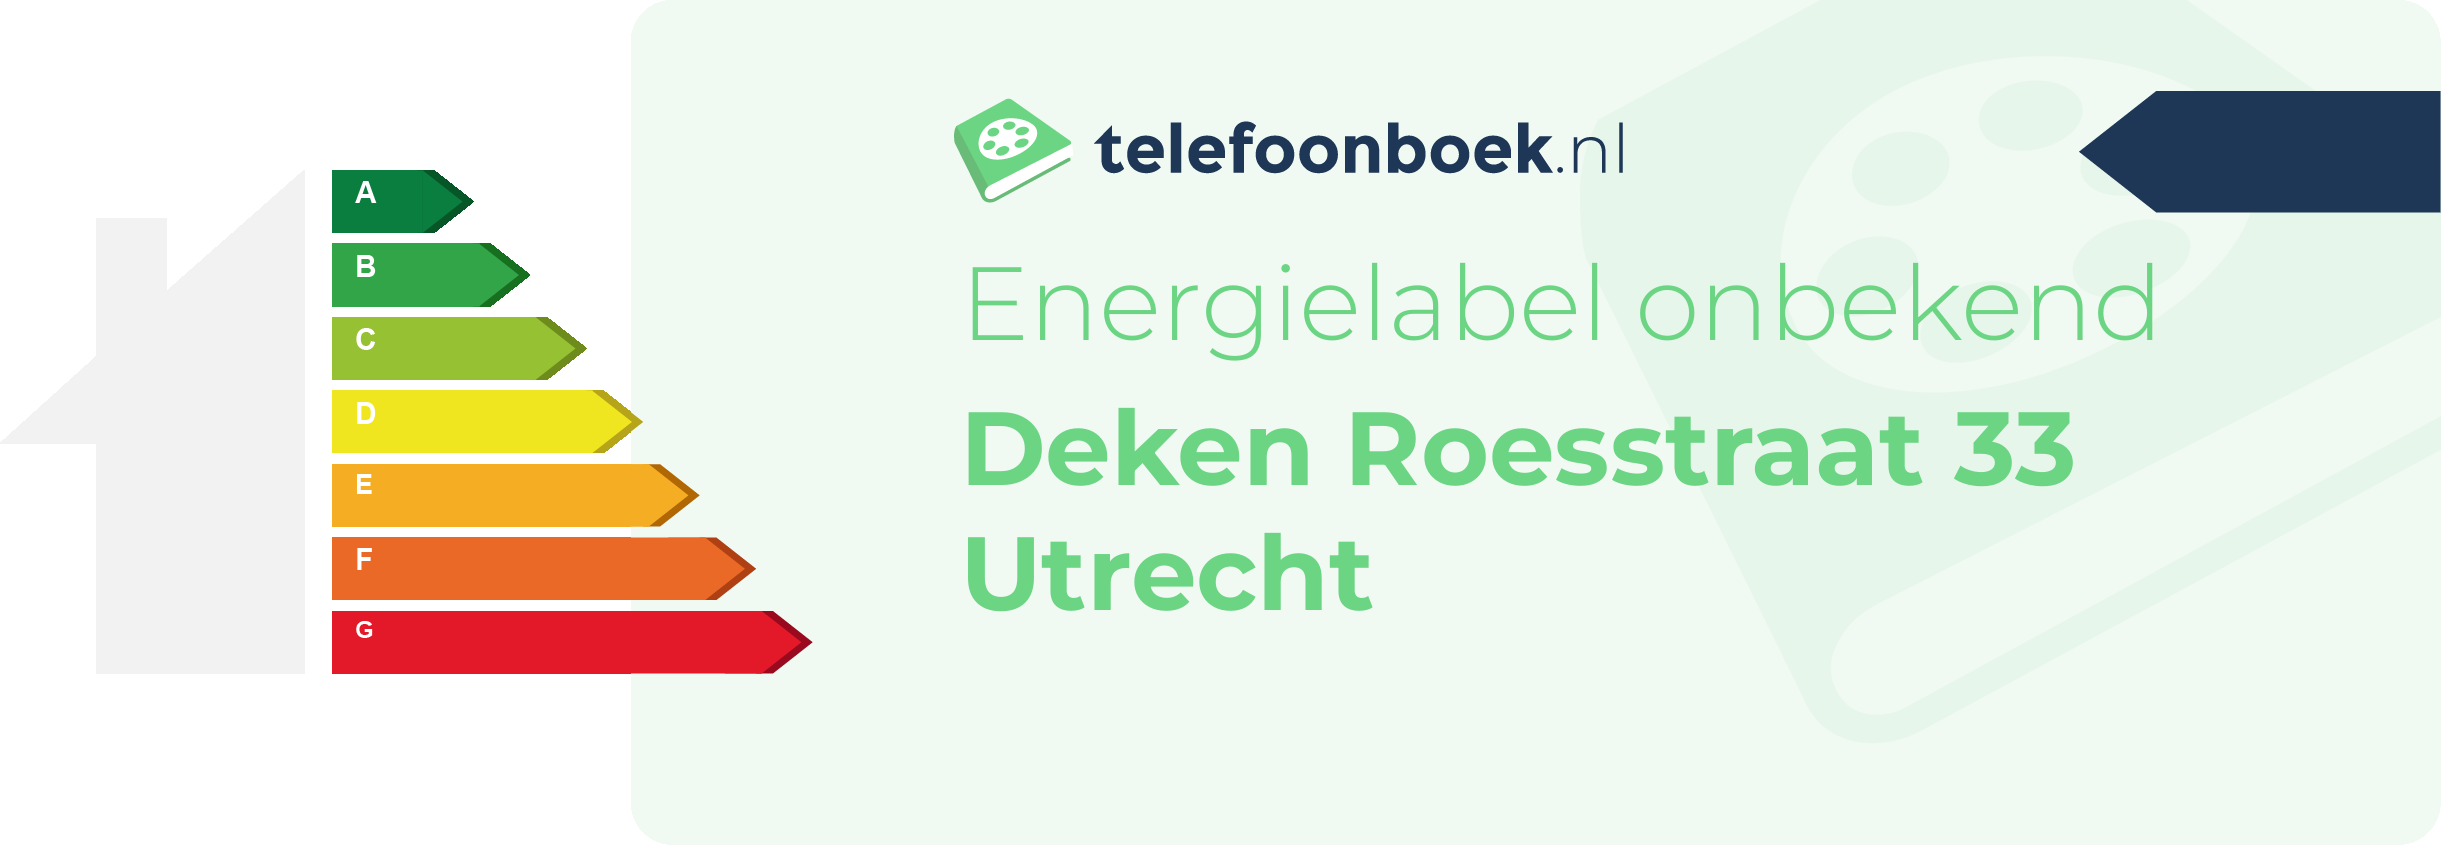 Energielabel Deken Roesstraat 33 Utrecht